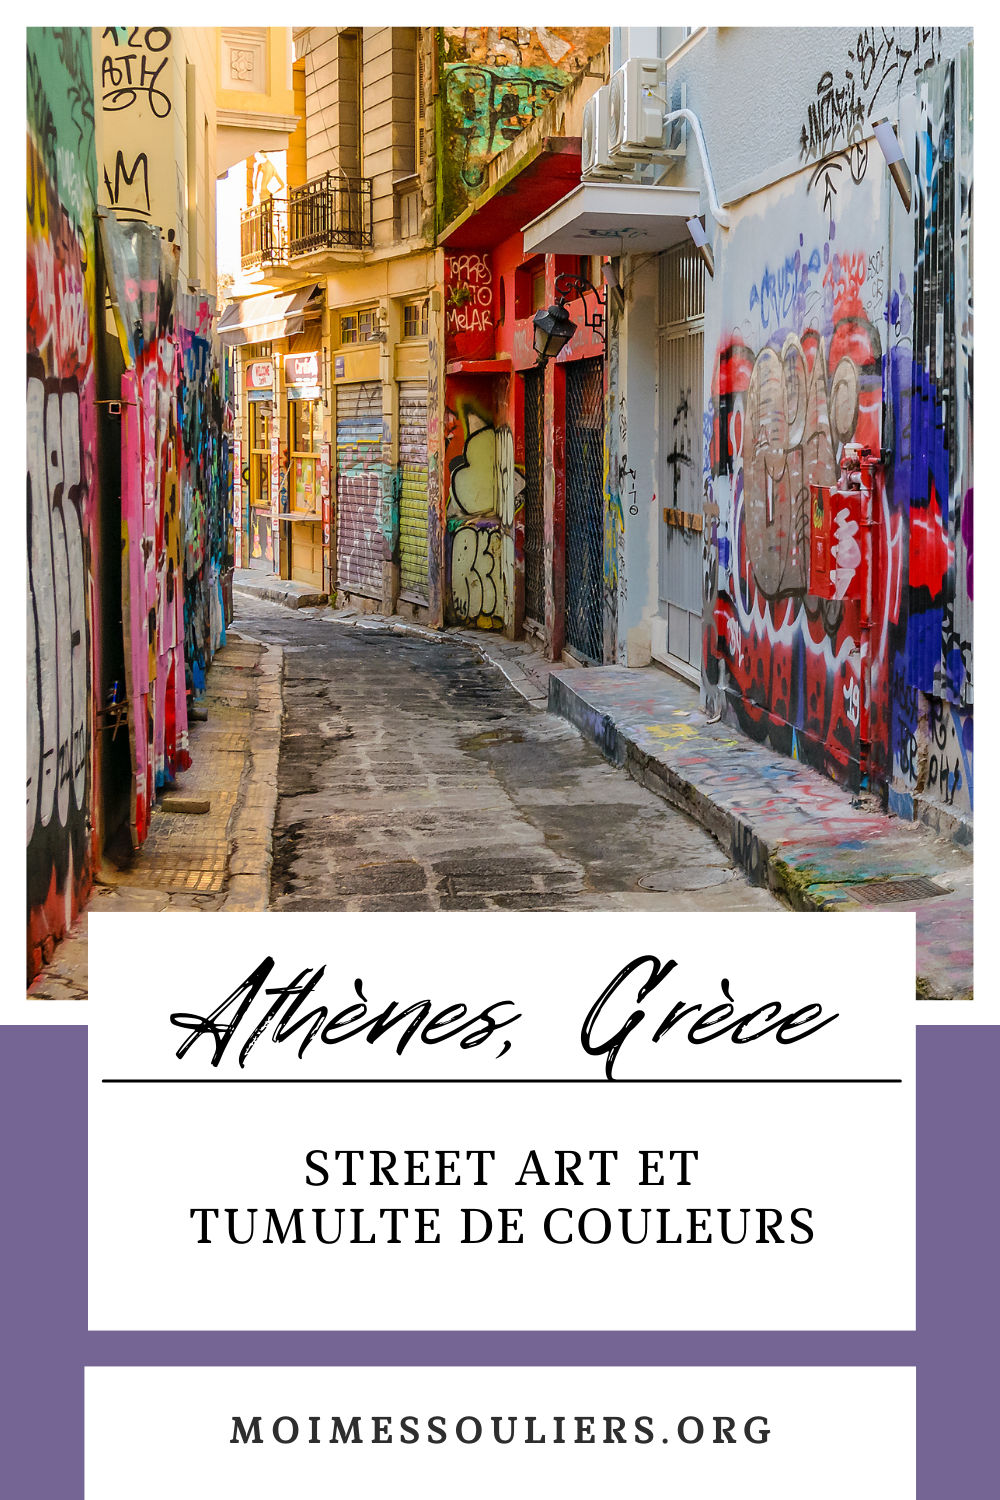 Athènes, Grèce: Street art et tumulte de couleurs